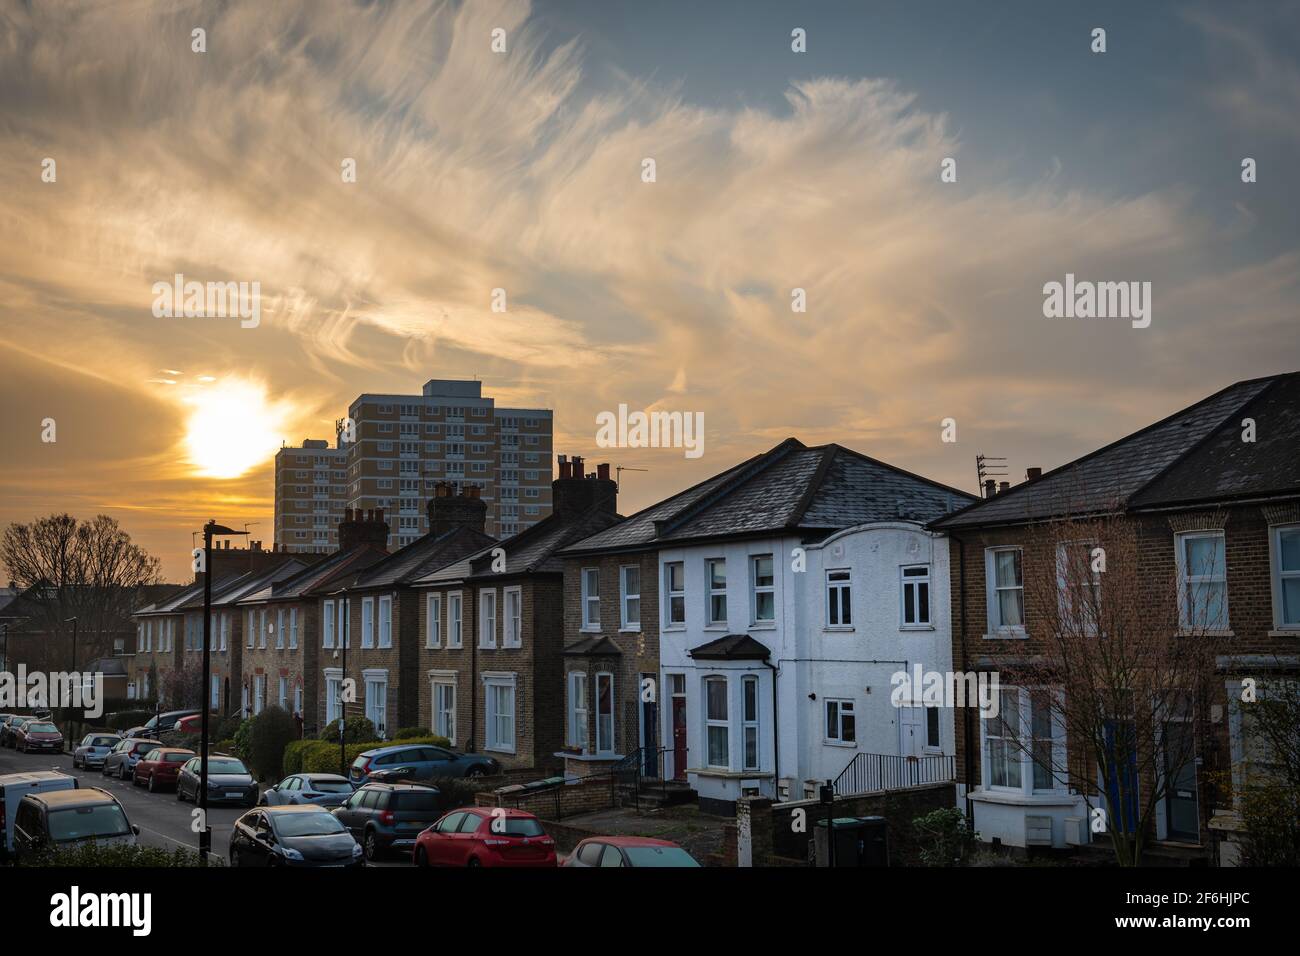 Lever de soleil sur une rue de banlieue à Londres avec des maisons semi-individuelles typique de la Grande-Bretagne de classe moyenne. Banque D'Images